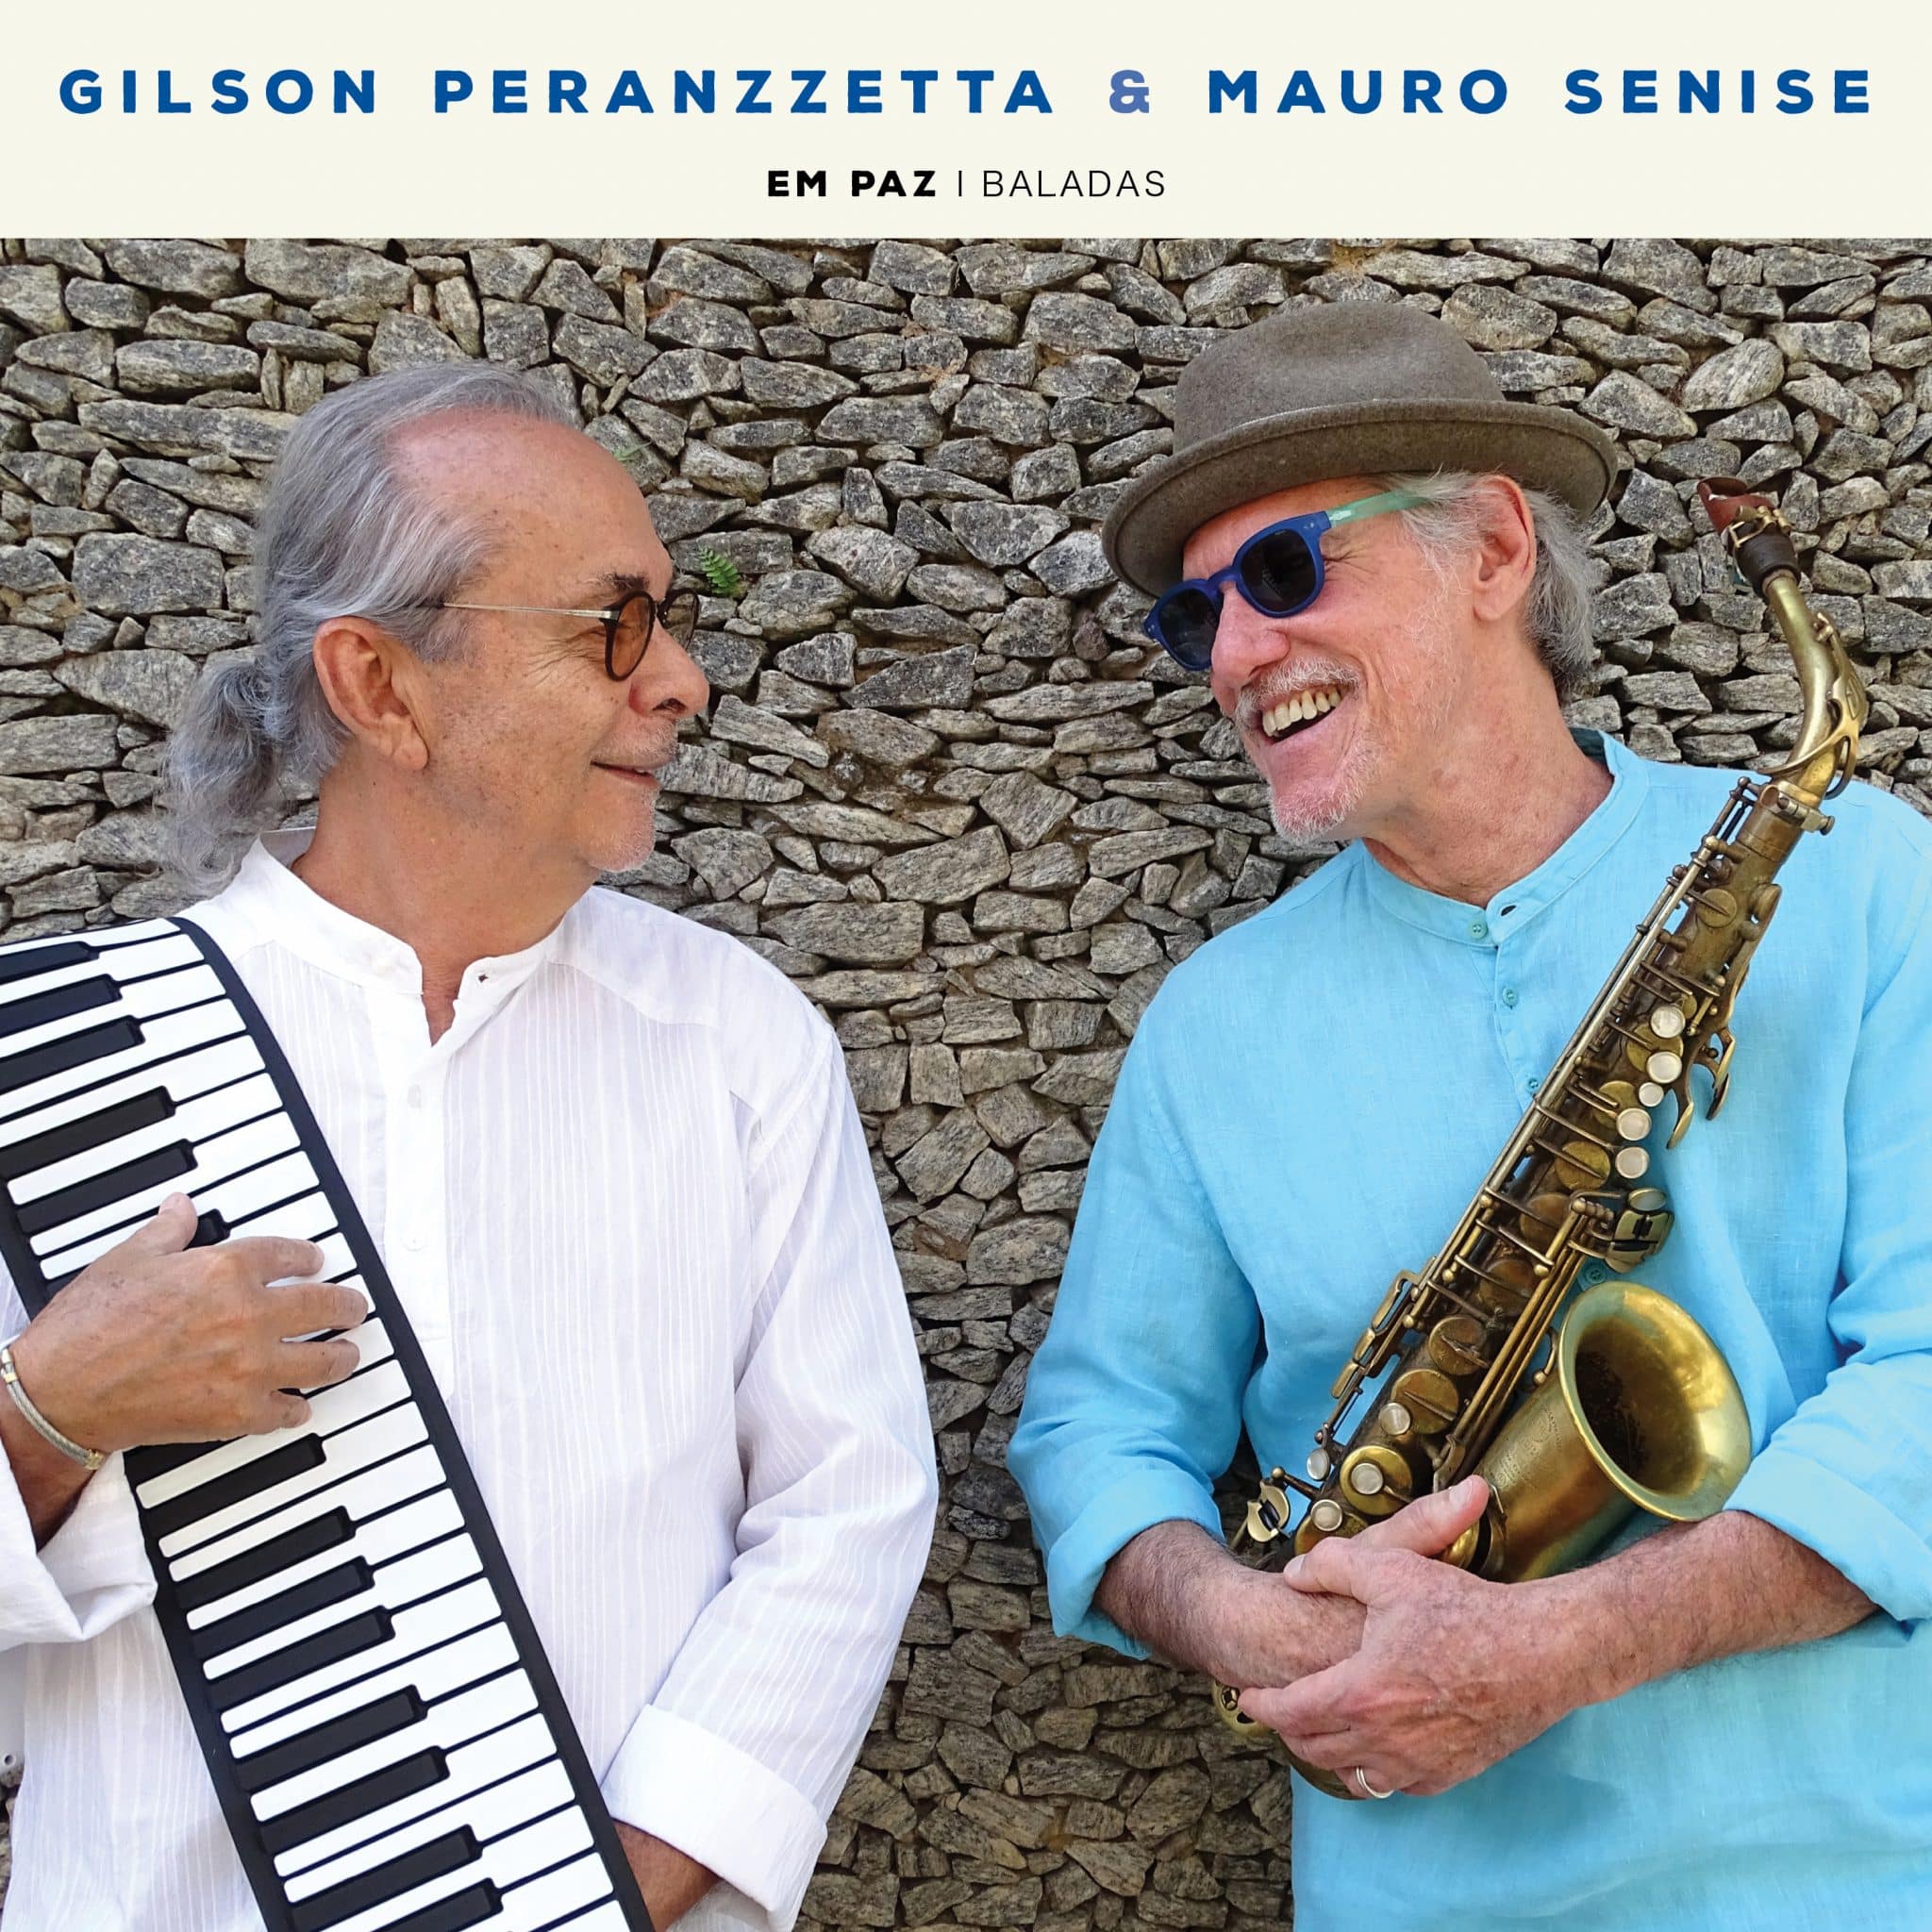 revistaprosaversoearte.com - 'Em Paz', 13º álbum do duo Gilson Peranzzetta e Mauro Senise